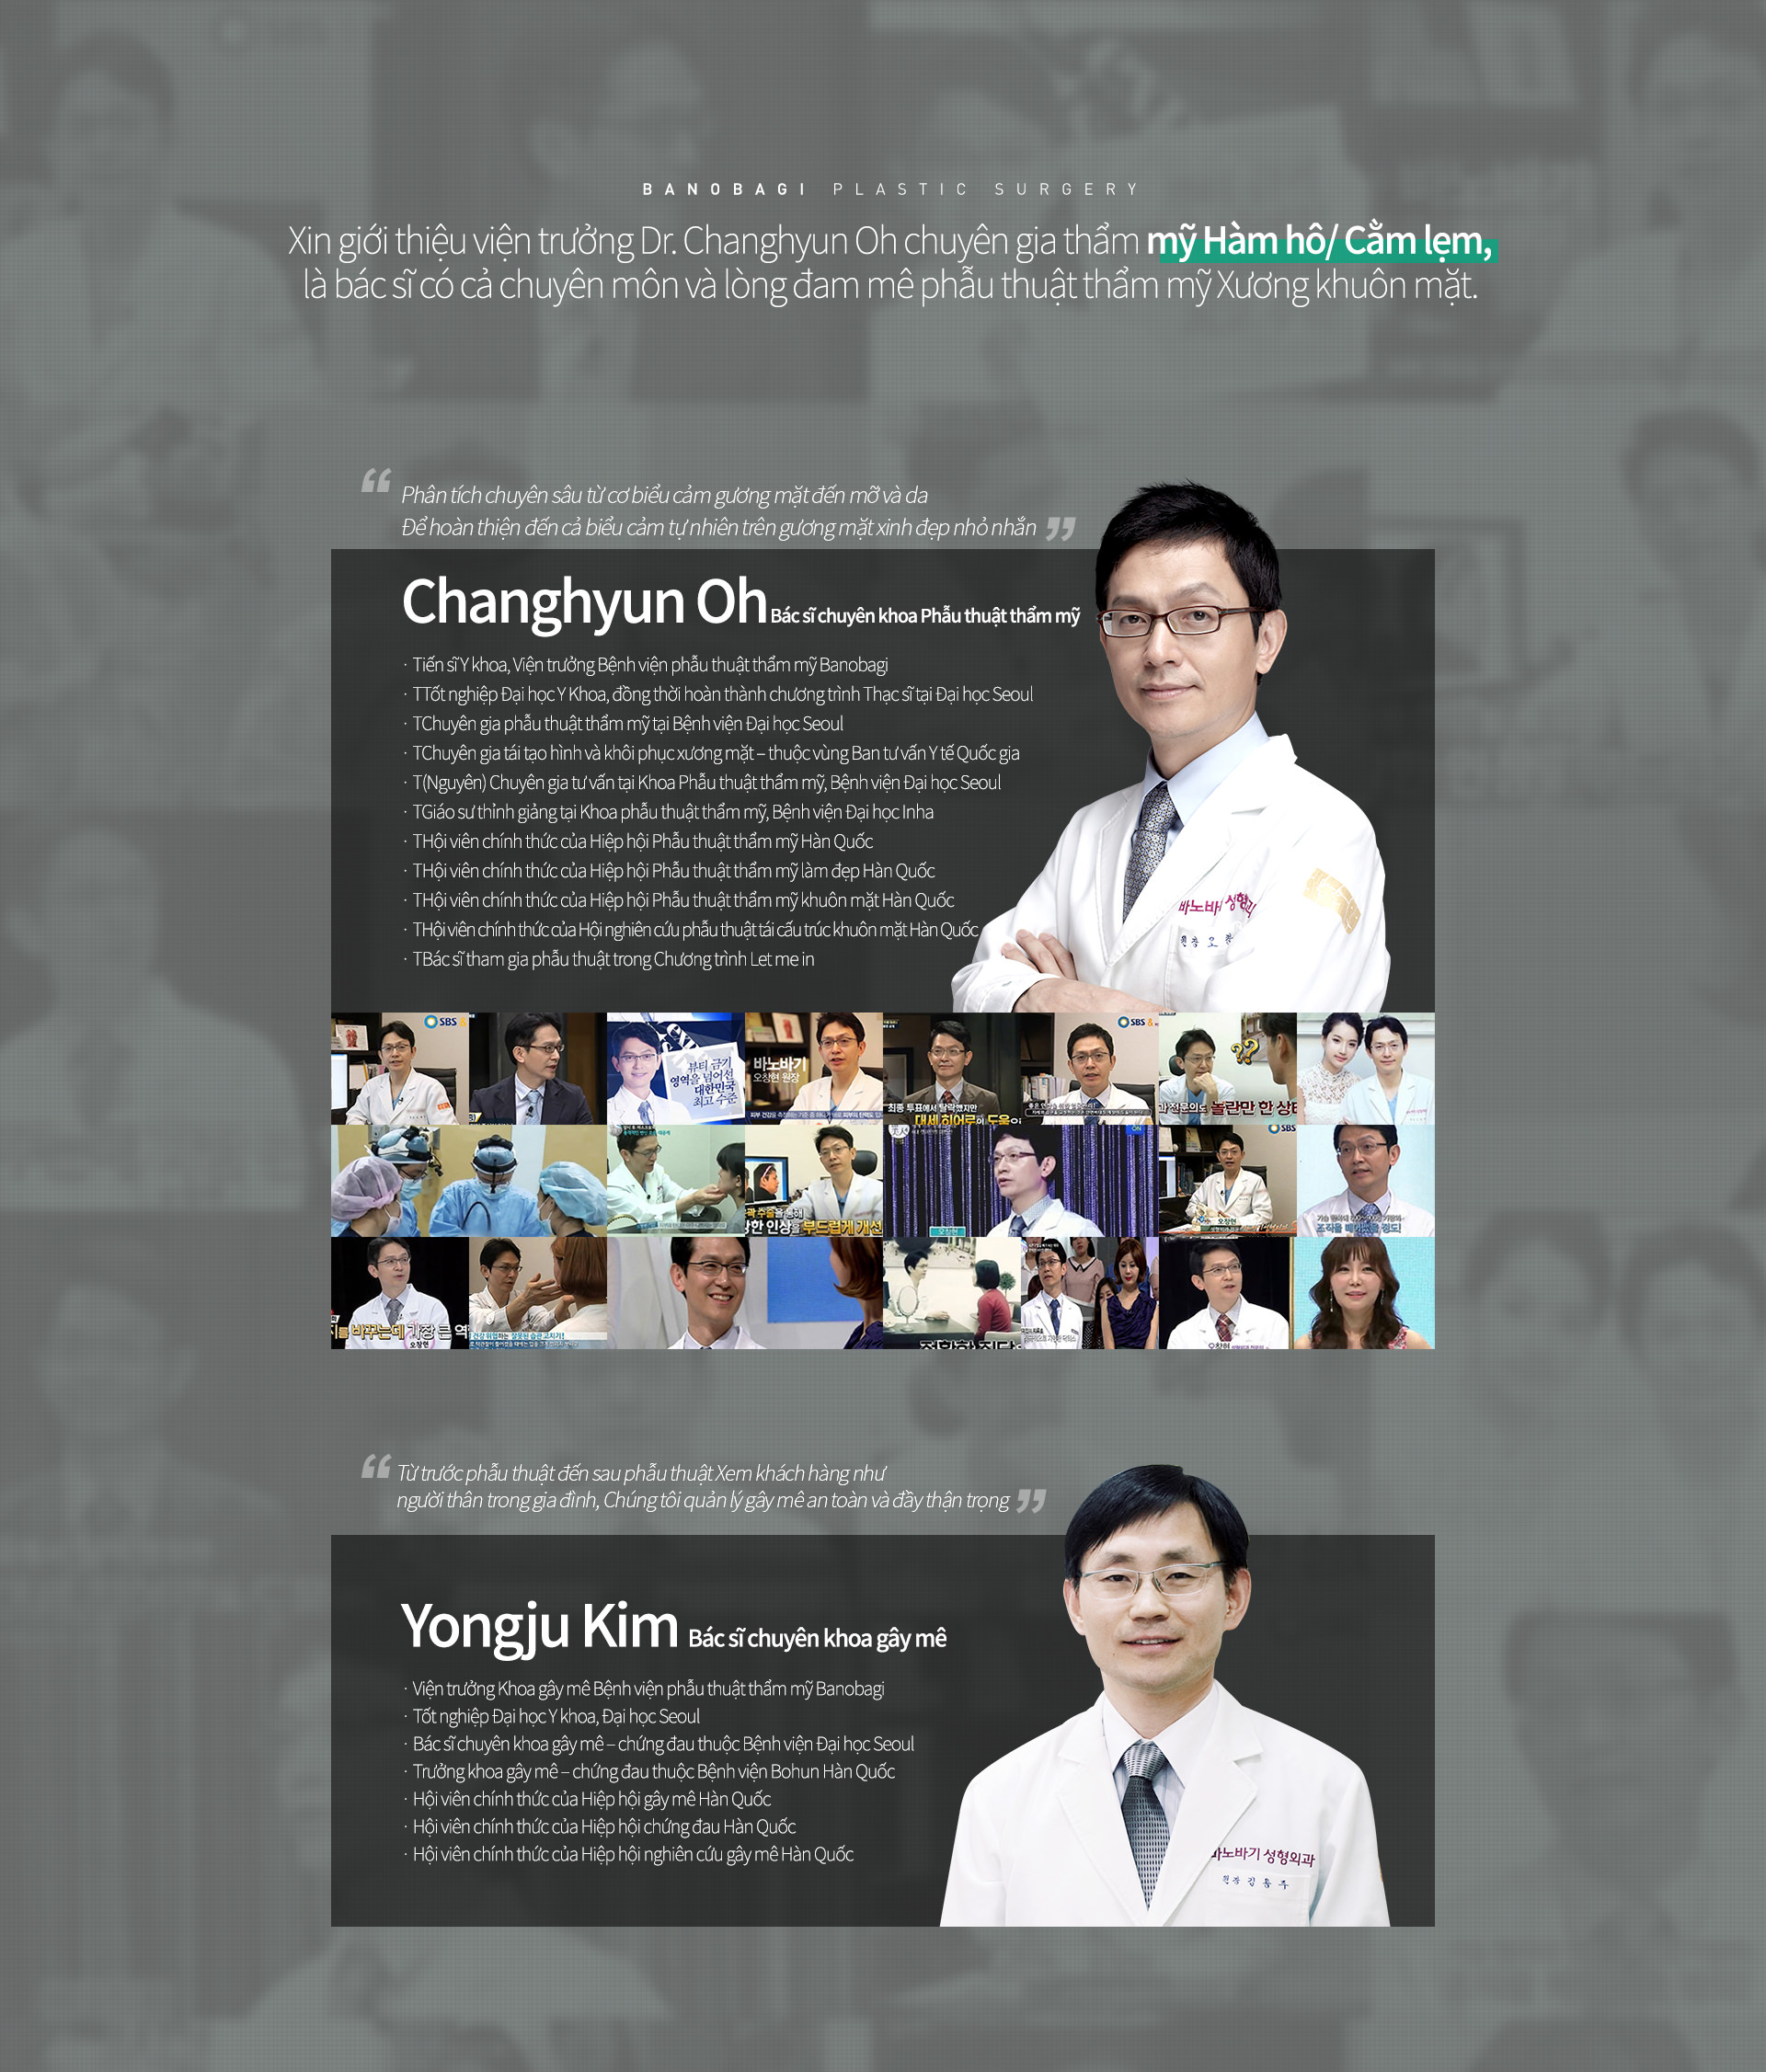 Xin giới thiệu viện trưởng Dr. Jonglim Park chuyên gia thẩm mỹ Hàm hô/ Cằm lẹm, là bác sĩ có cả chuyên môn và lòng đang mê phẫu thuật thẩm mỹ Xương khuôn mặt. Dr. Jonglim Park là con trai của giáo sư trường Đại học Quốc gia Seoul ParkChulKyu, người có tầm ảnh hưởng nhất trong phẫu thuật Xương hàm mặt Hàn quốc. 